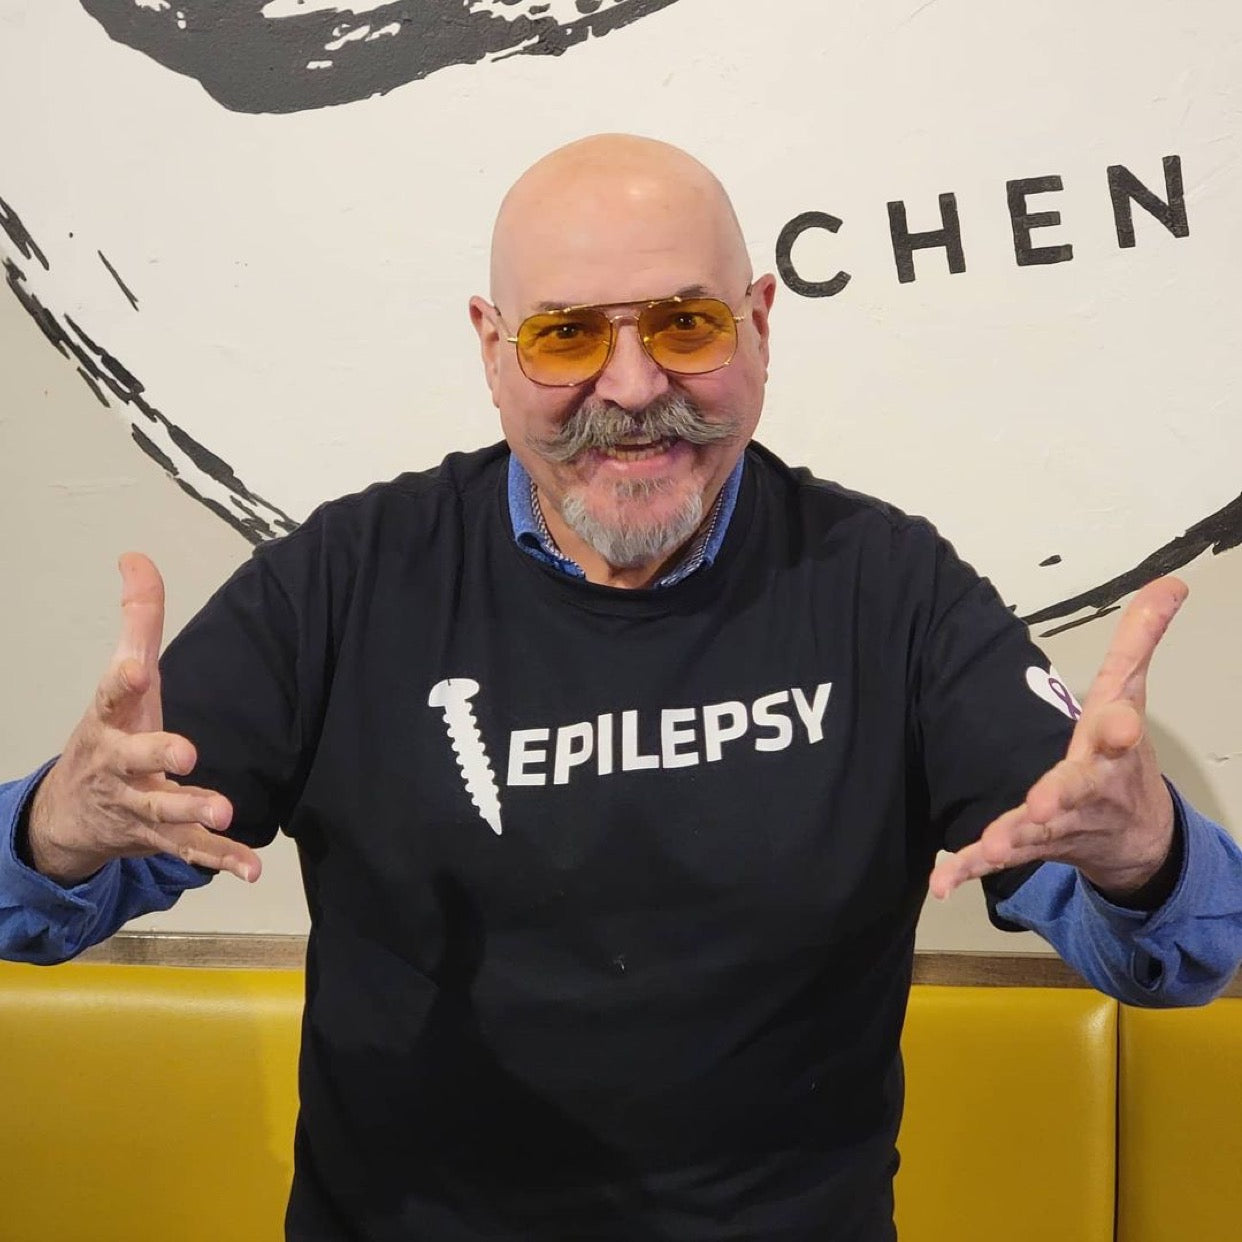 Massimo Capra wearing our Screw Epilepsy Unisex Shirt